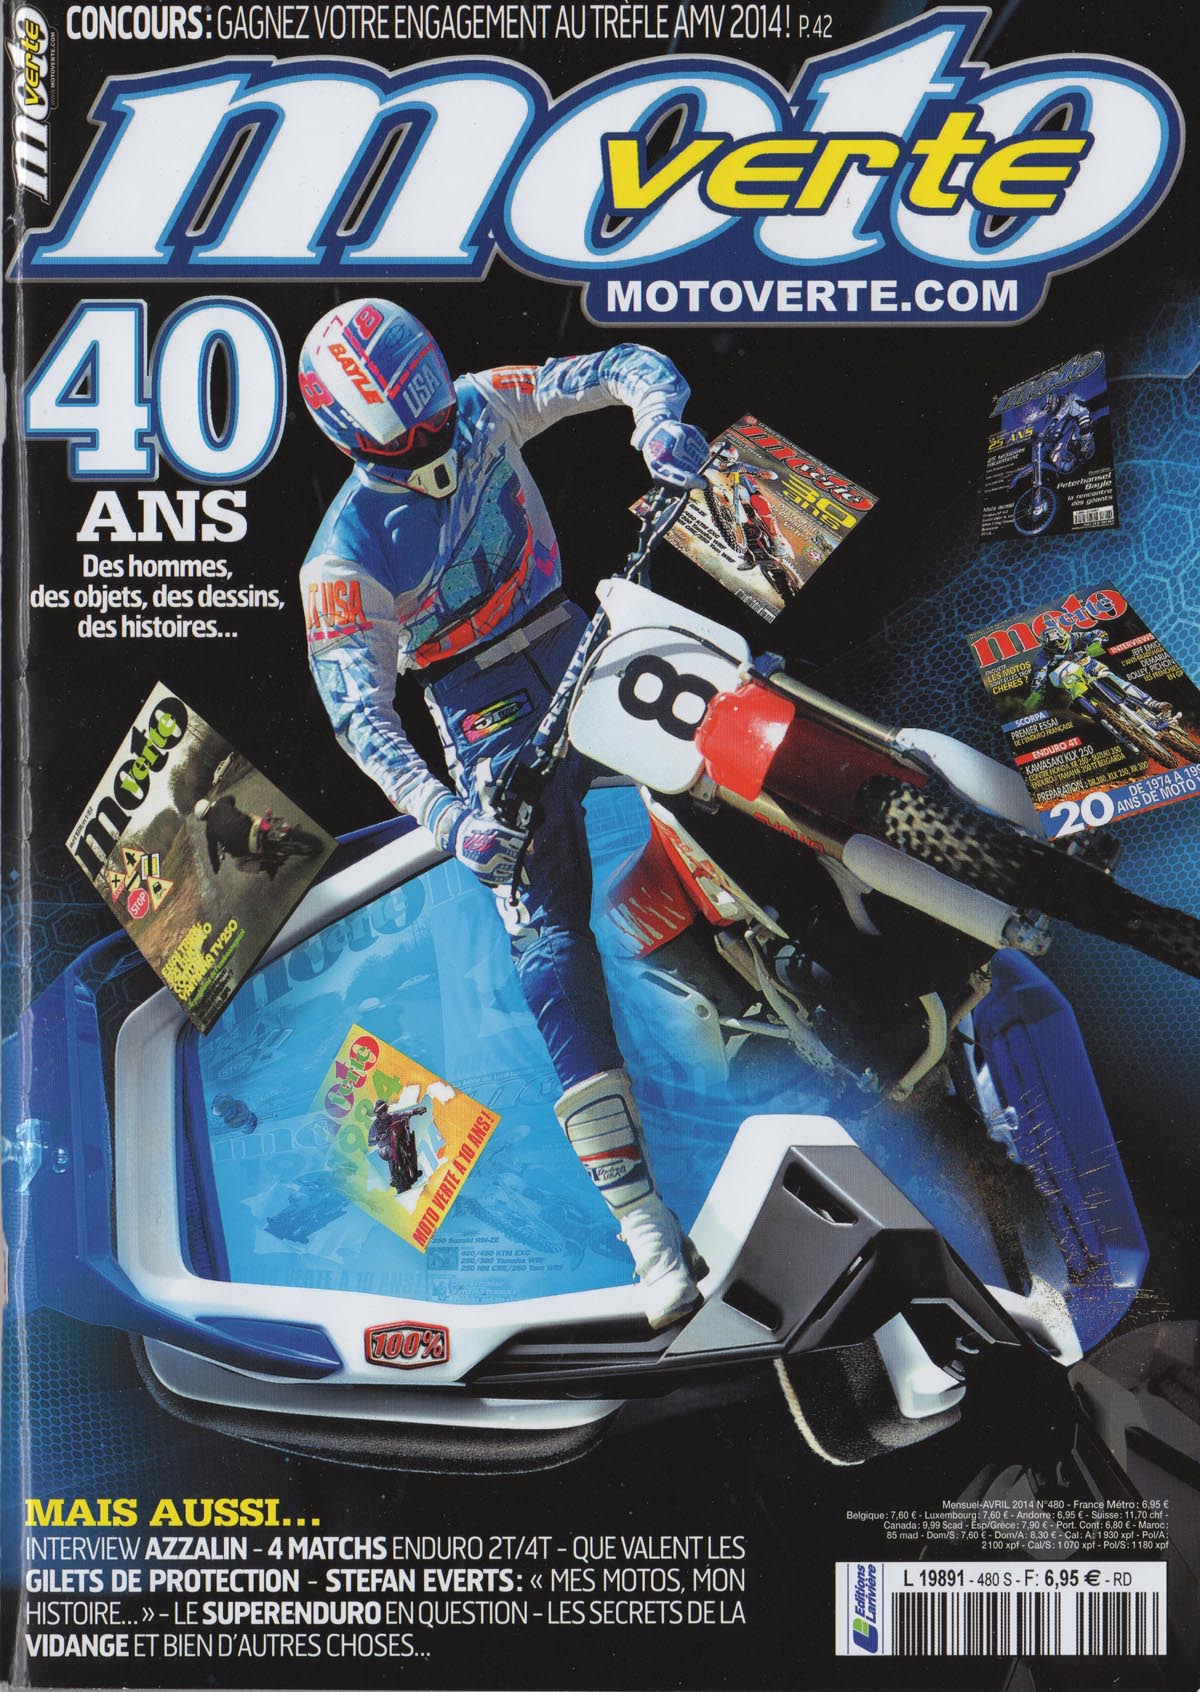 La couverture du numéro 480 de Moto Verte. Le magazine fête ses 40 ans